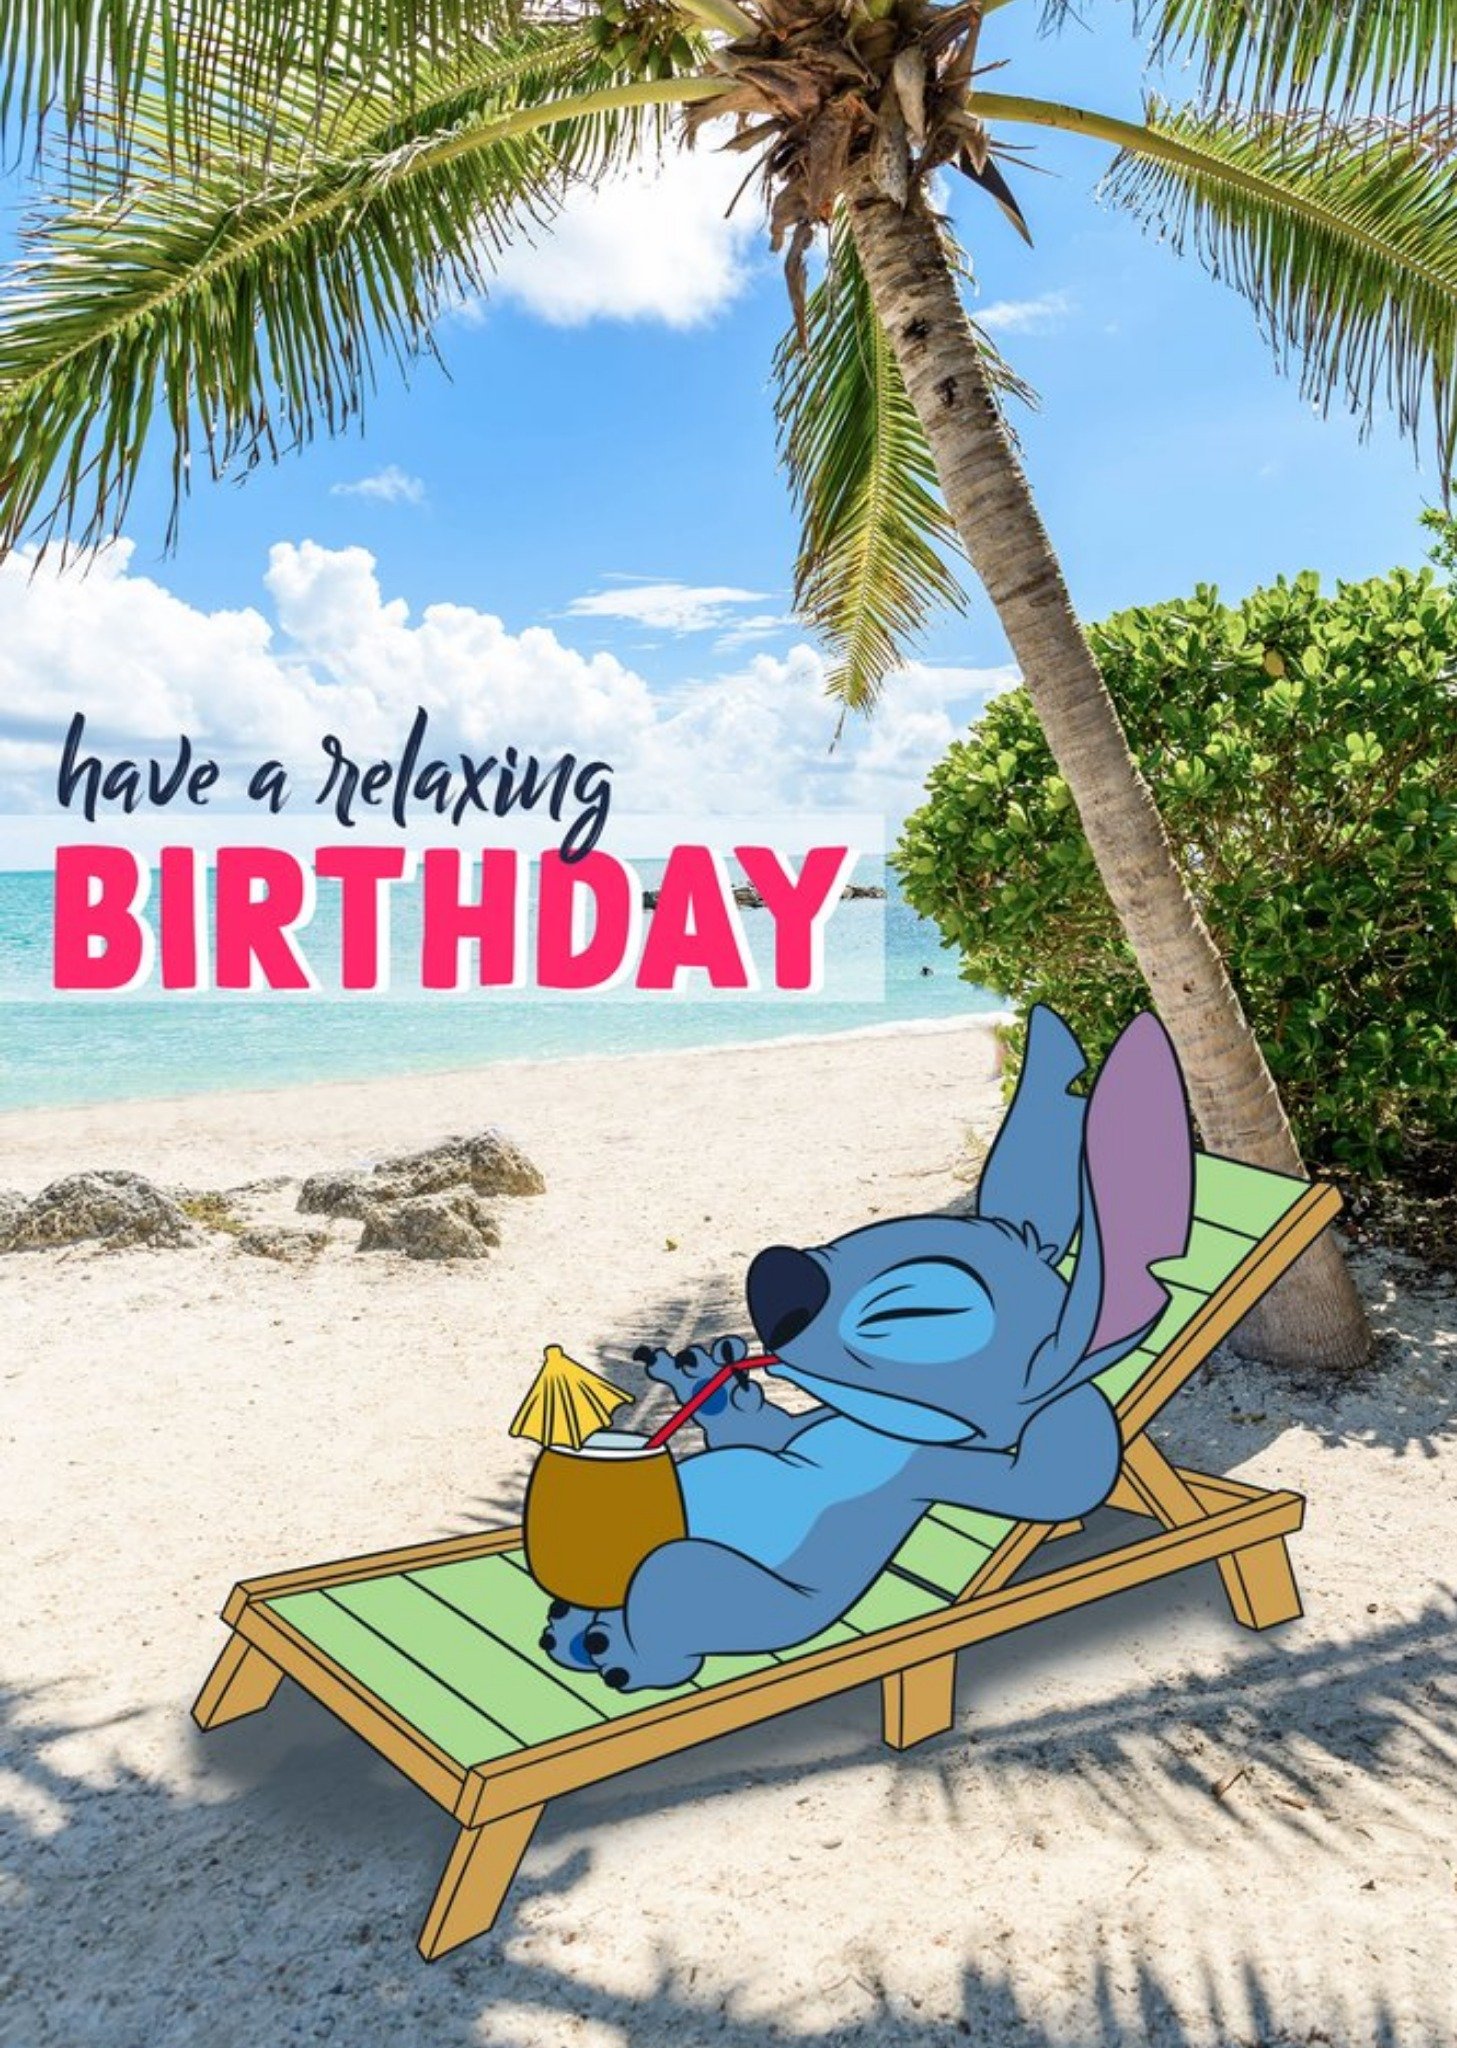 Disney Lilo & Stitch Birthday Card Ecard